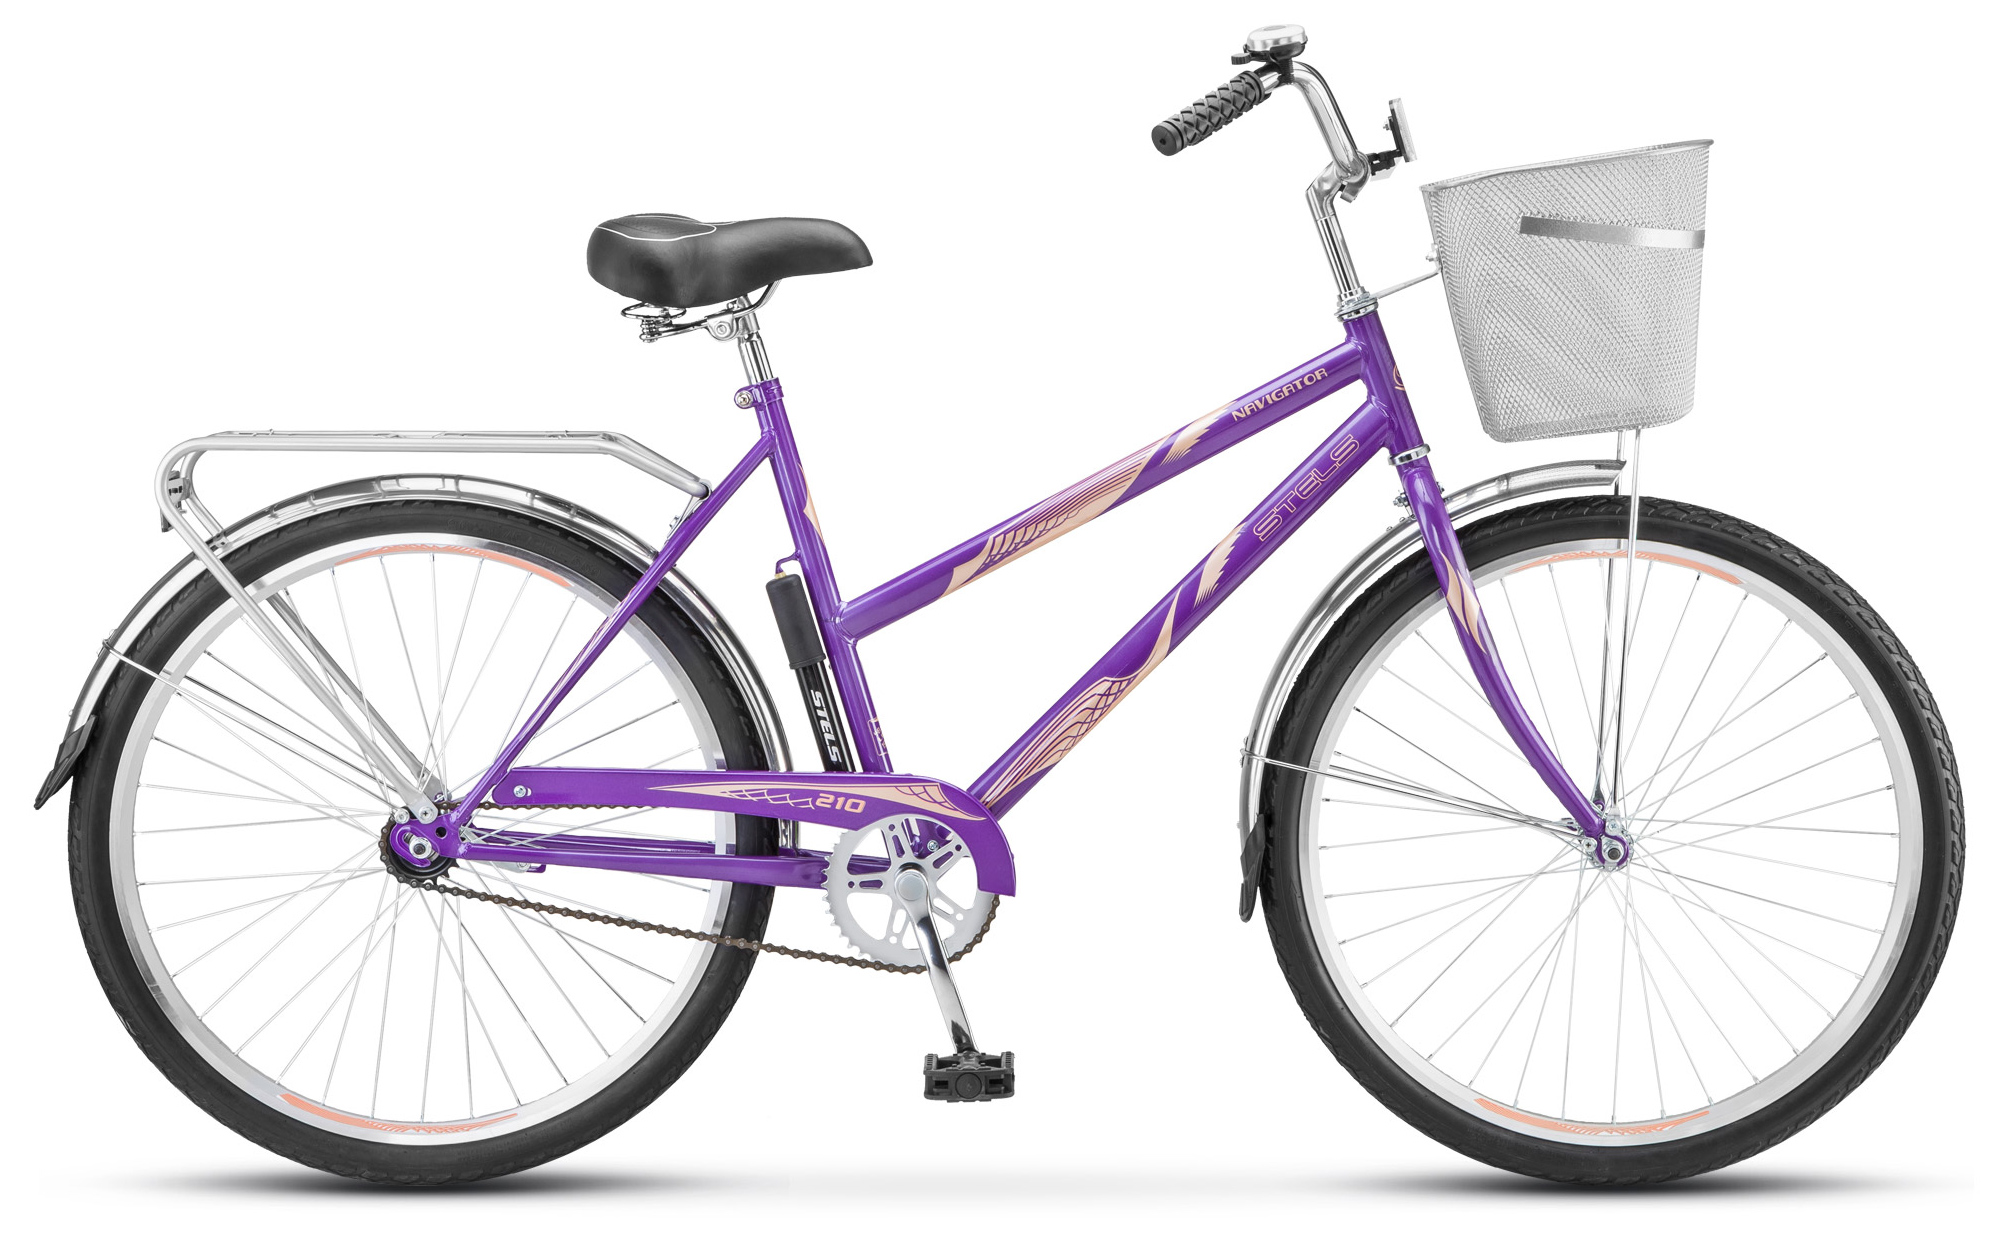  Отзывы о Женском велосипеде Stels Navigator 210 Lady 26" (Z010) 2019